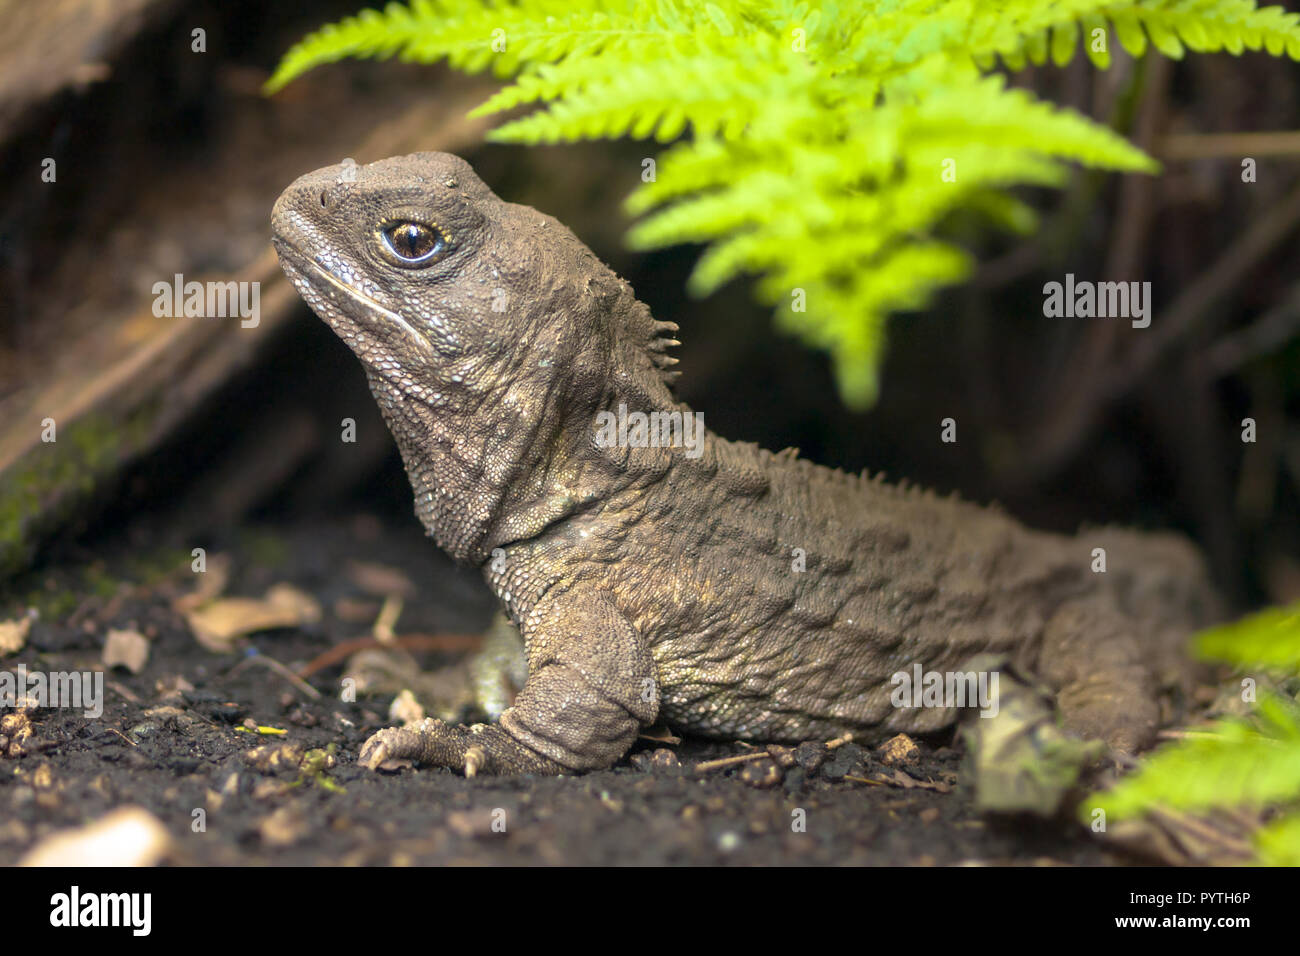 El tuatara, el fósil viviente, es un reptil nativas y endémicas de Nueva Zelanda. En el entorno natural de animales Foto de stock